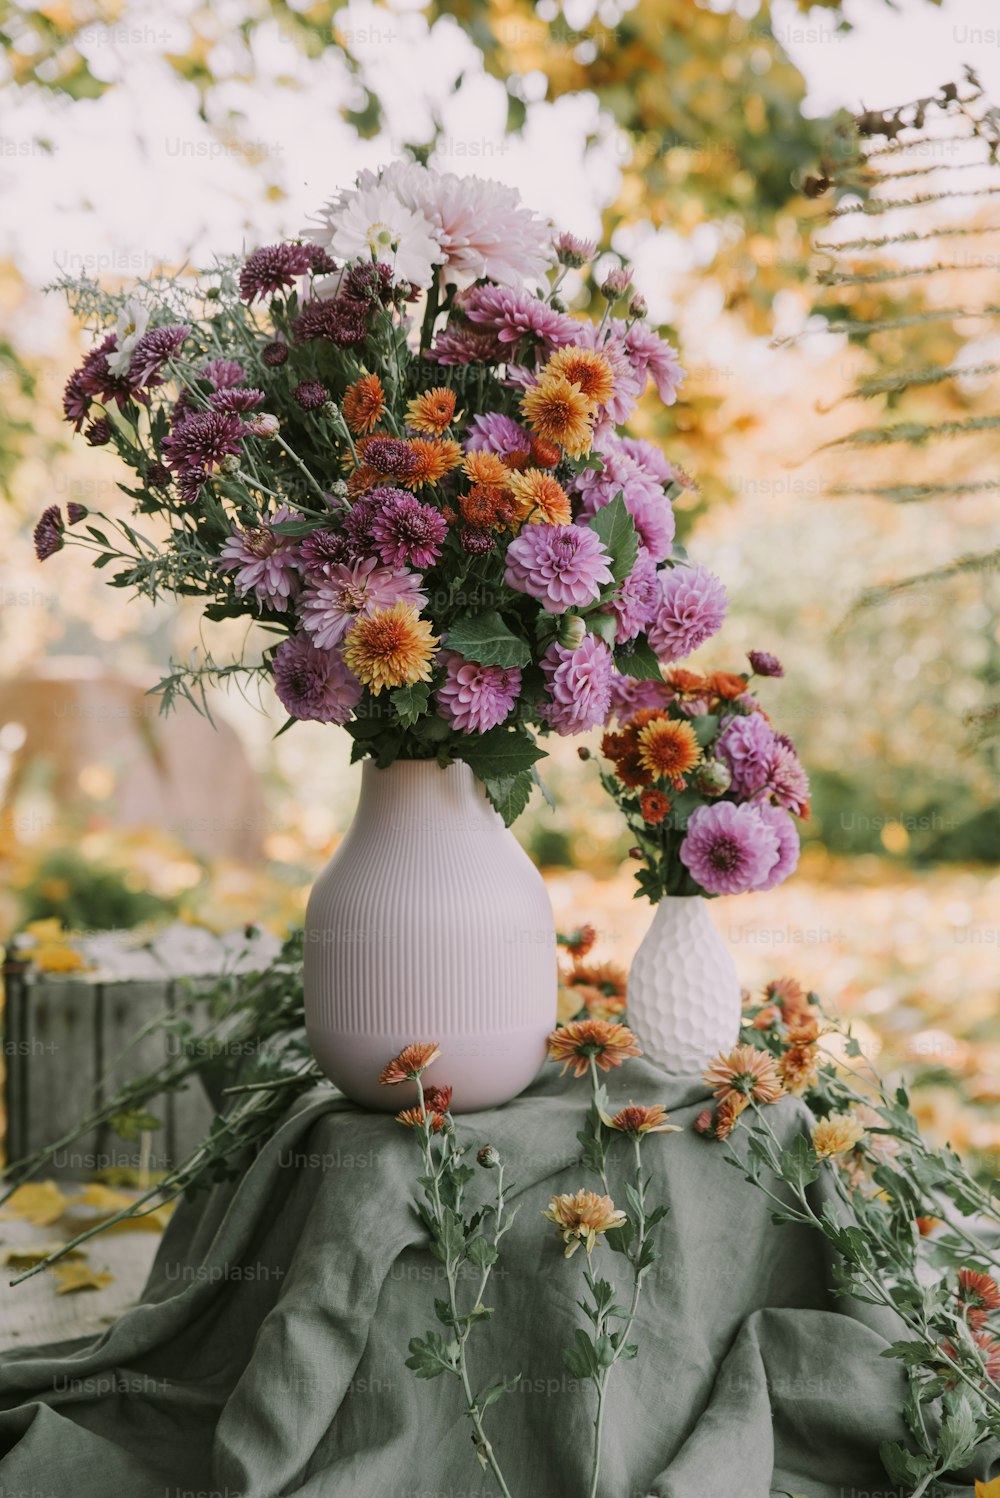 Un jarrón blanco lleno de flores púrpuras y naranjas